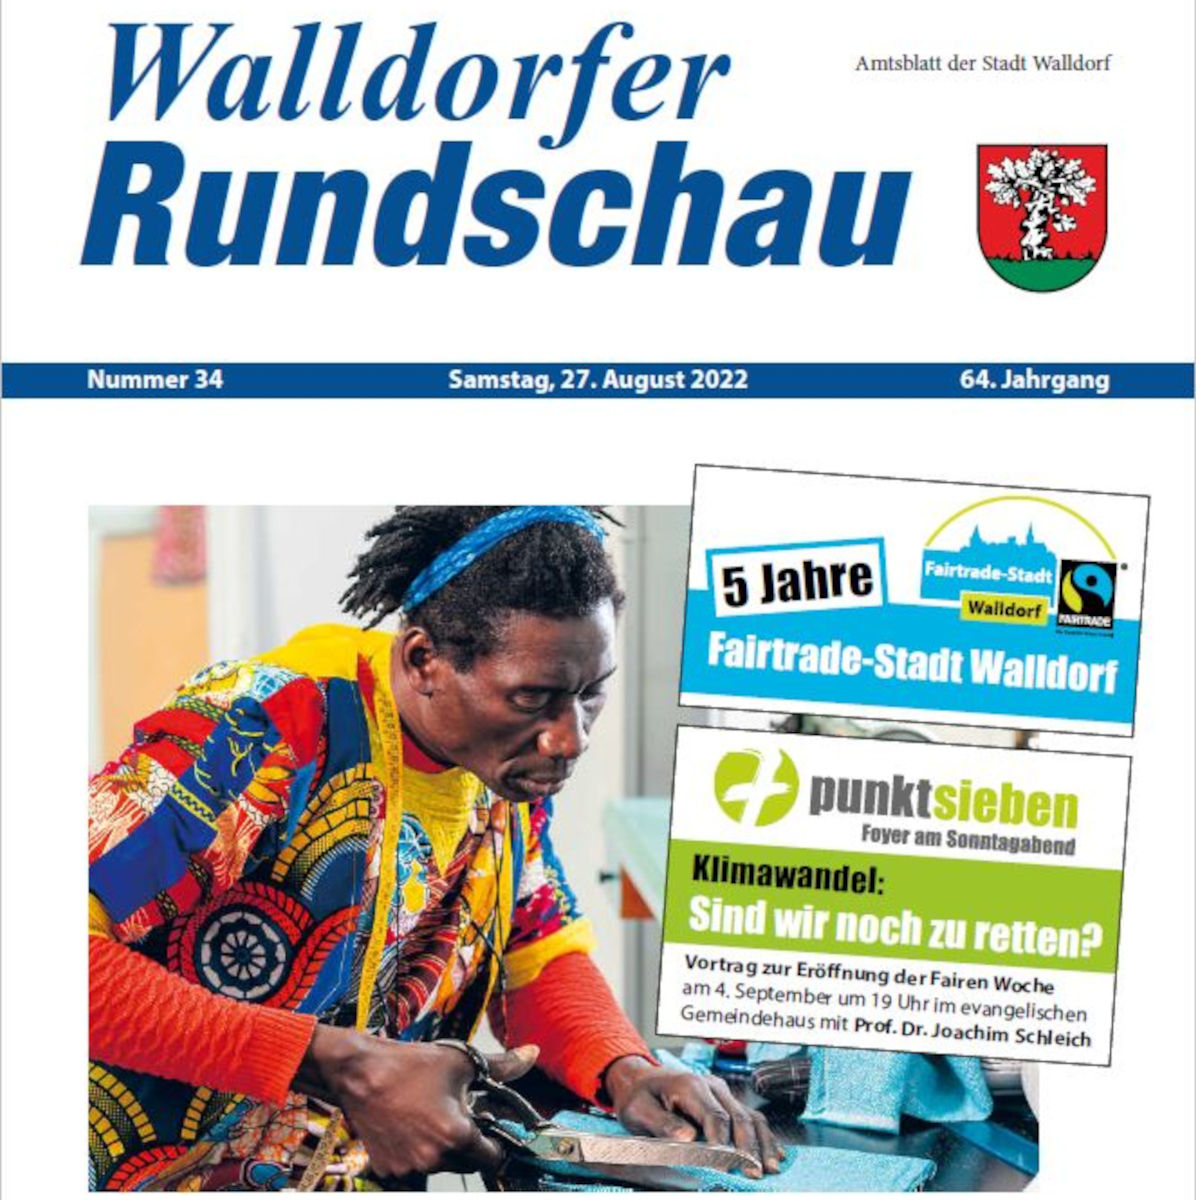 Die Walldorfer Rundschau 2022 Nr. 34 als E-paper | Bildschirmabgriff